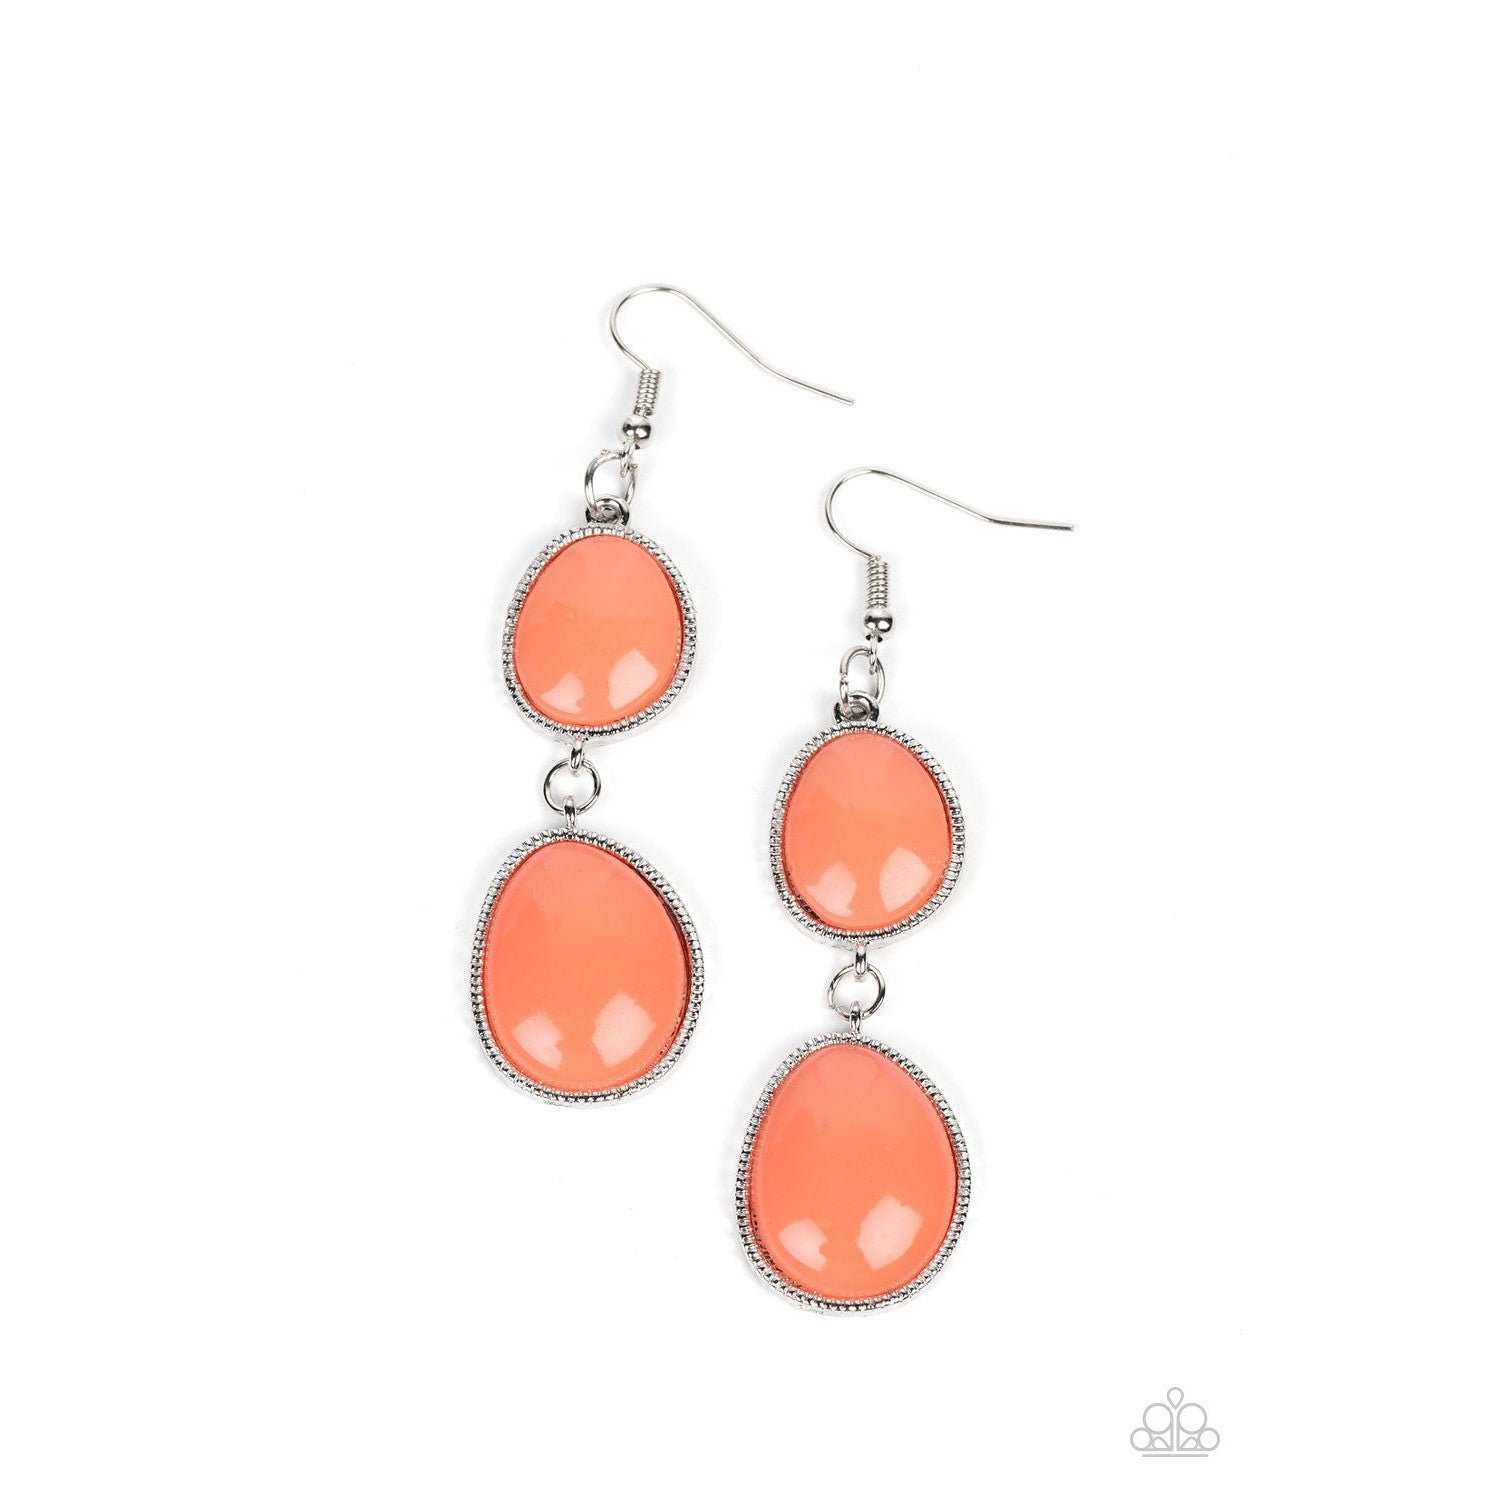 Mediterranean Myth - Orange Earrings - Bling by Danielle Baker